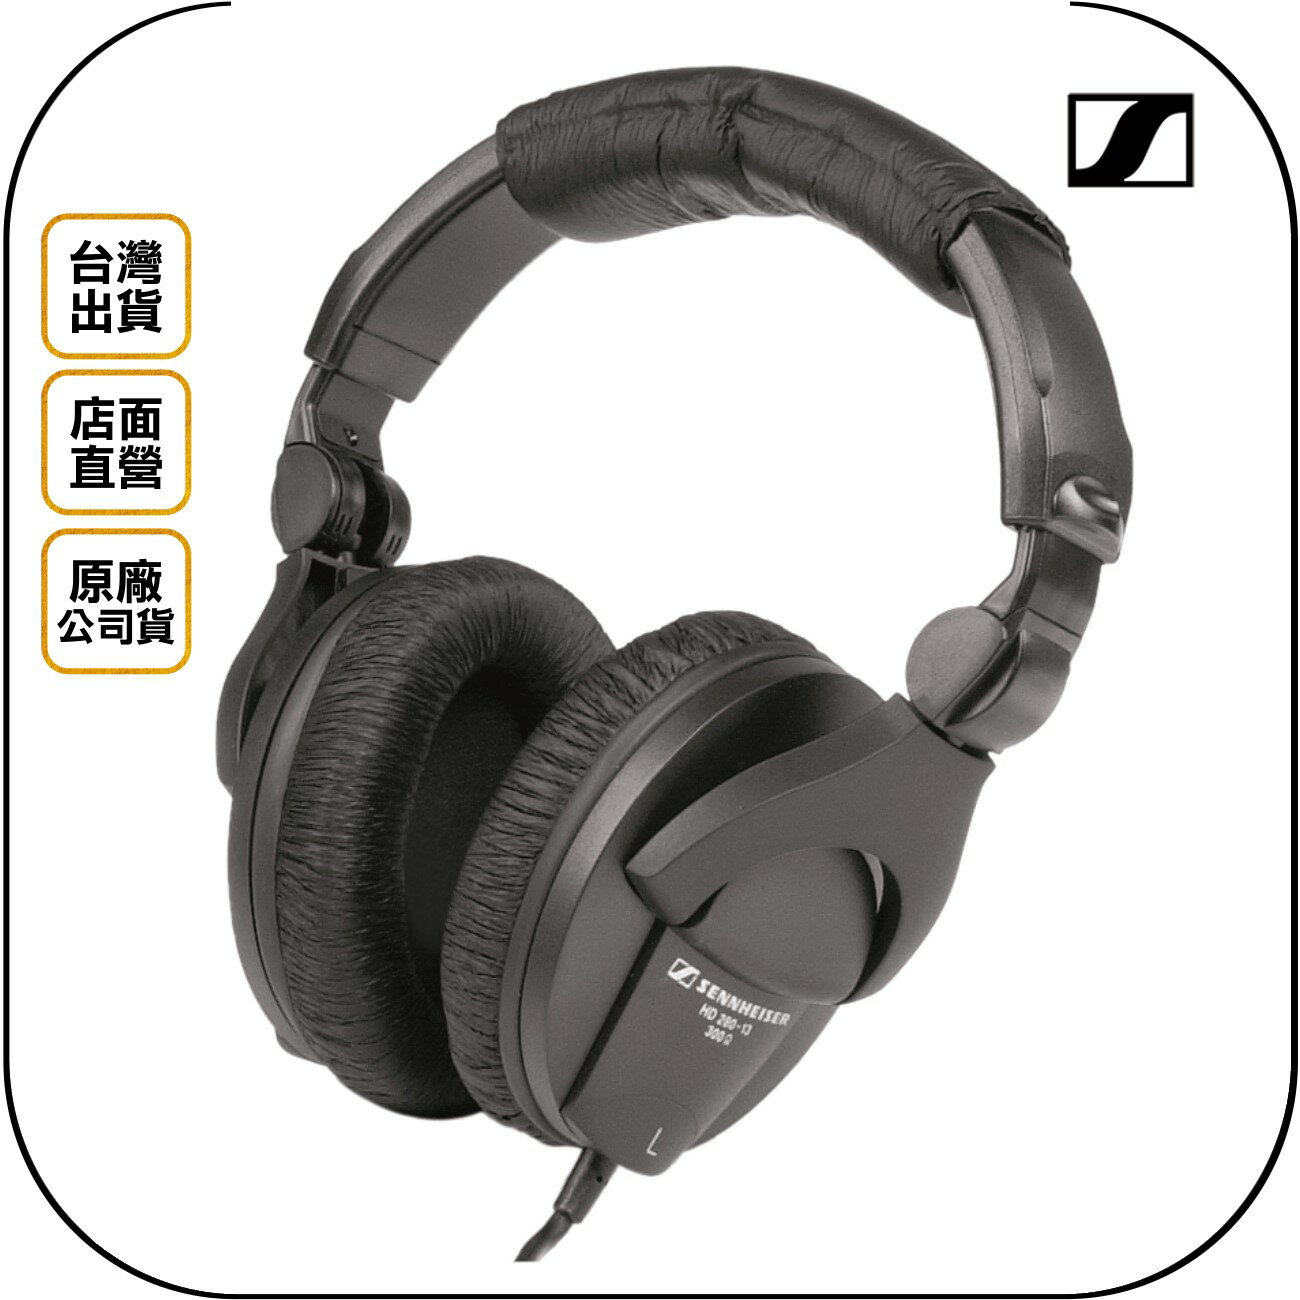 《飛翔無線3C》SENNHEISER 森海塞爾 HD 280 PRO 專業型監聽耳機◉公司貨◉有線頭戴耳罩